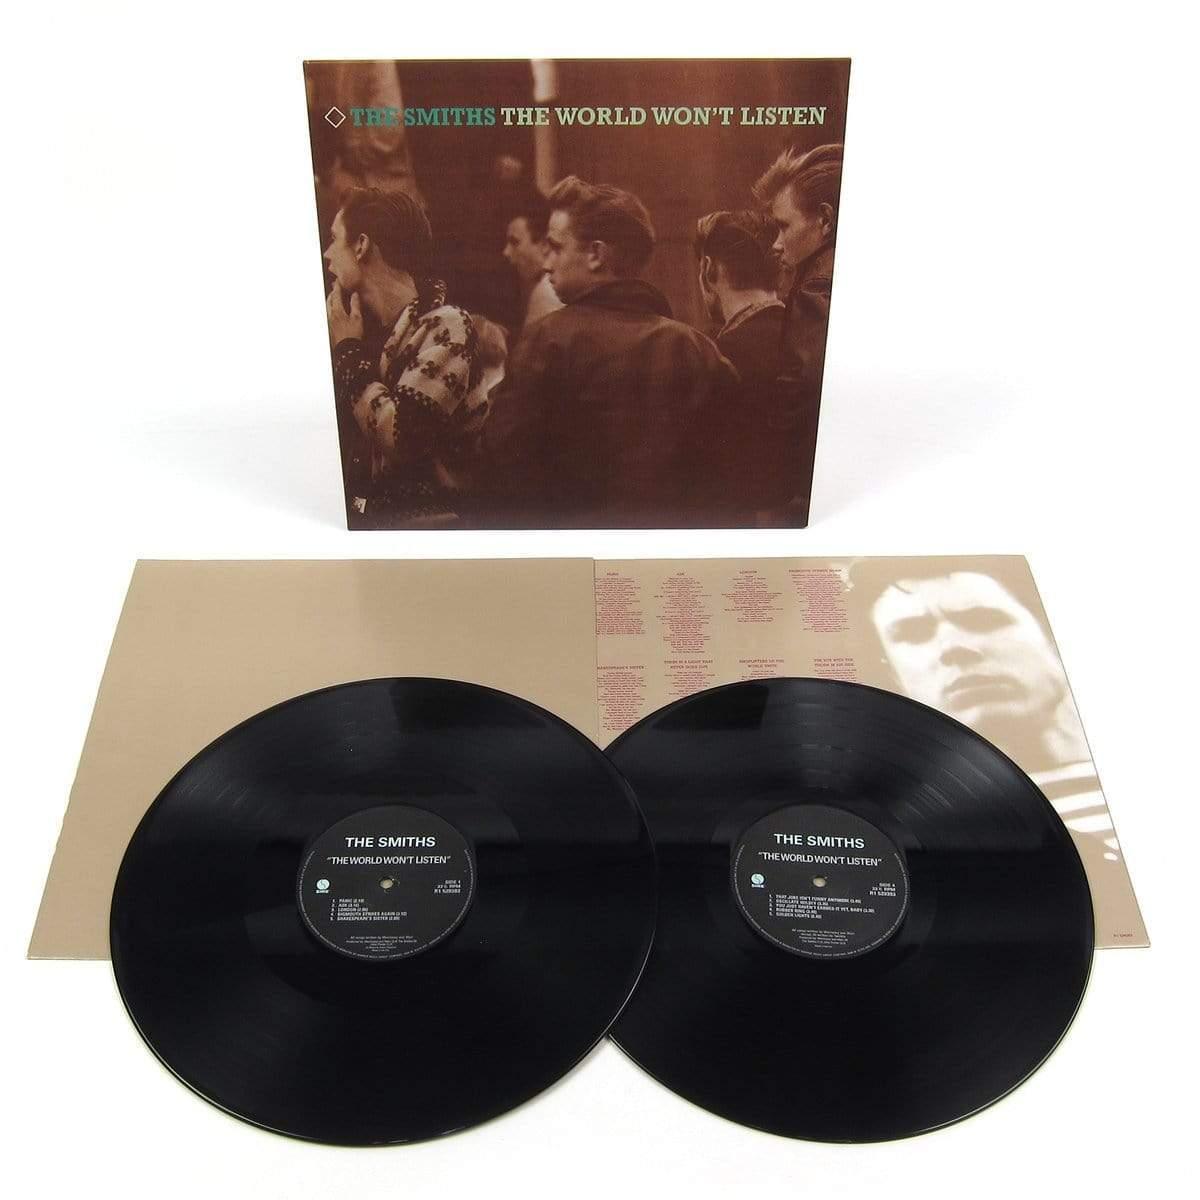 The Smiths - The World Won't Listen (Remastered, 180 Gram) (2 LP)